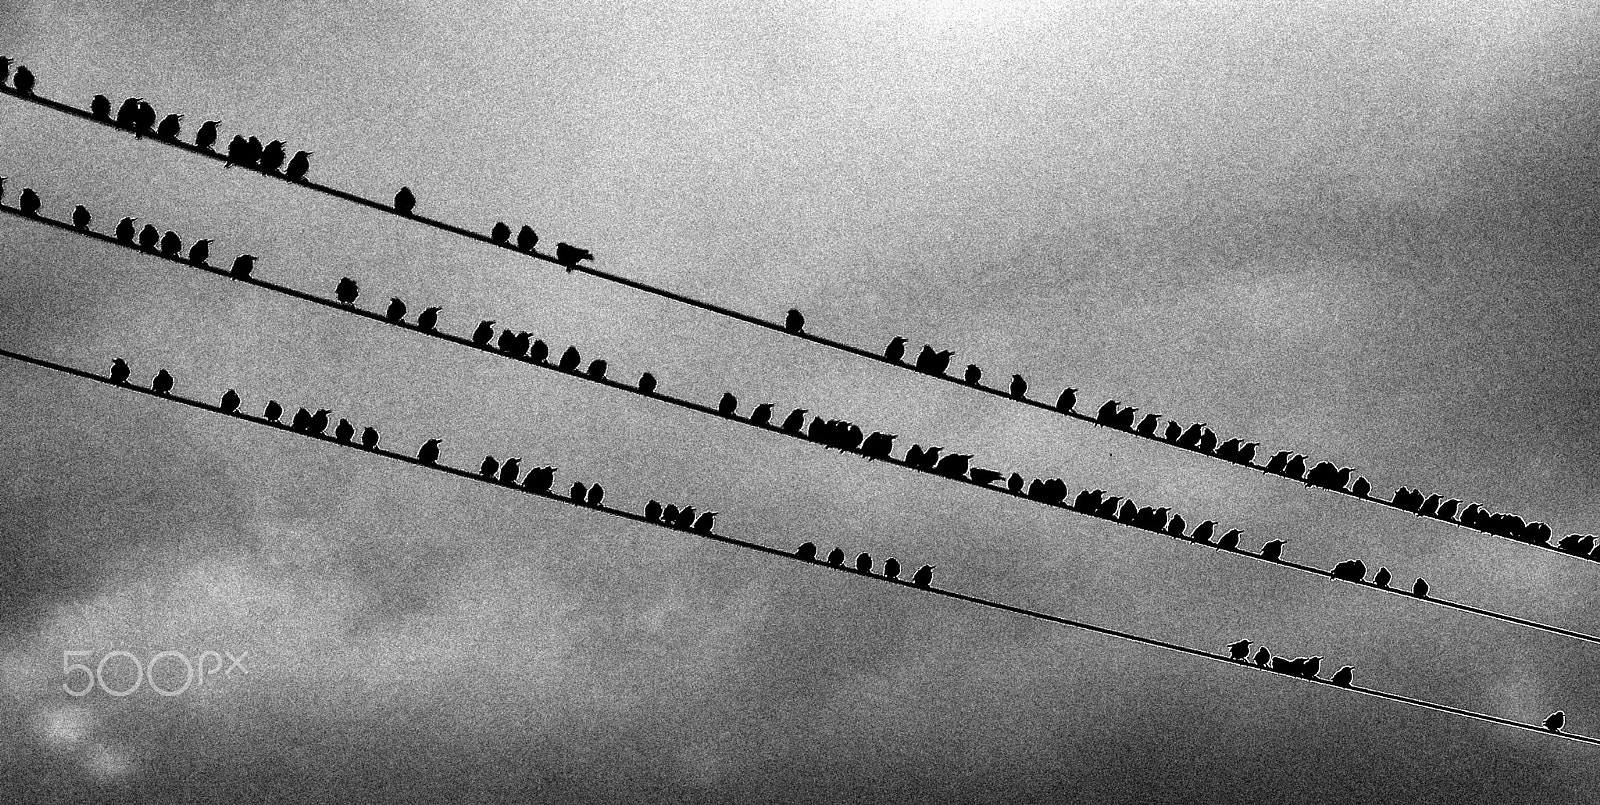 Nikon D800 + AF Nikkor 180mm f/2.8 IF-ED sample photo. The birds... photography